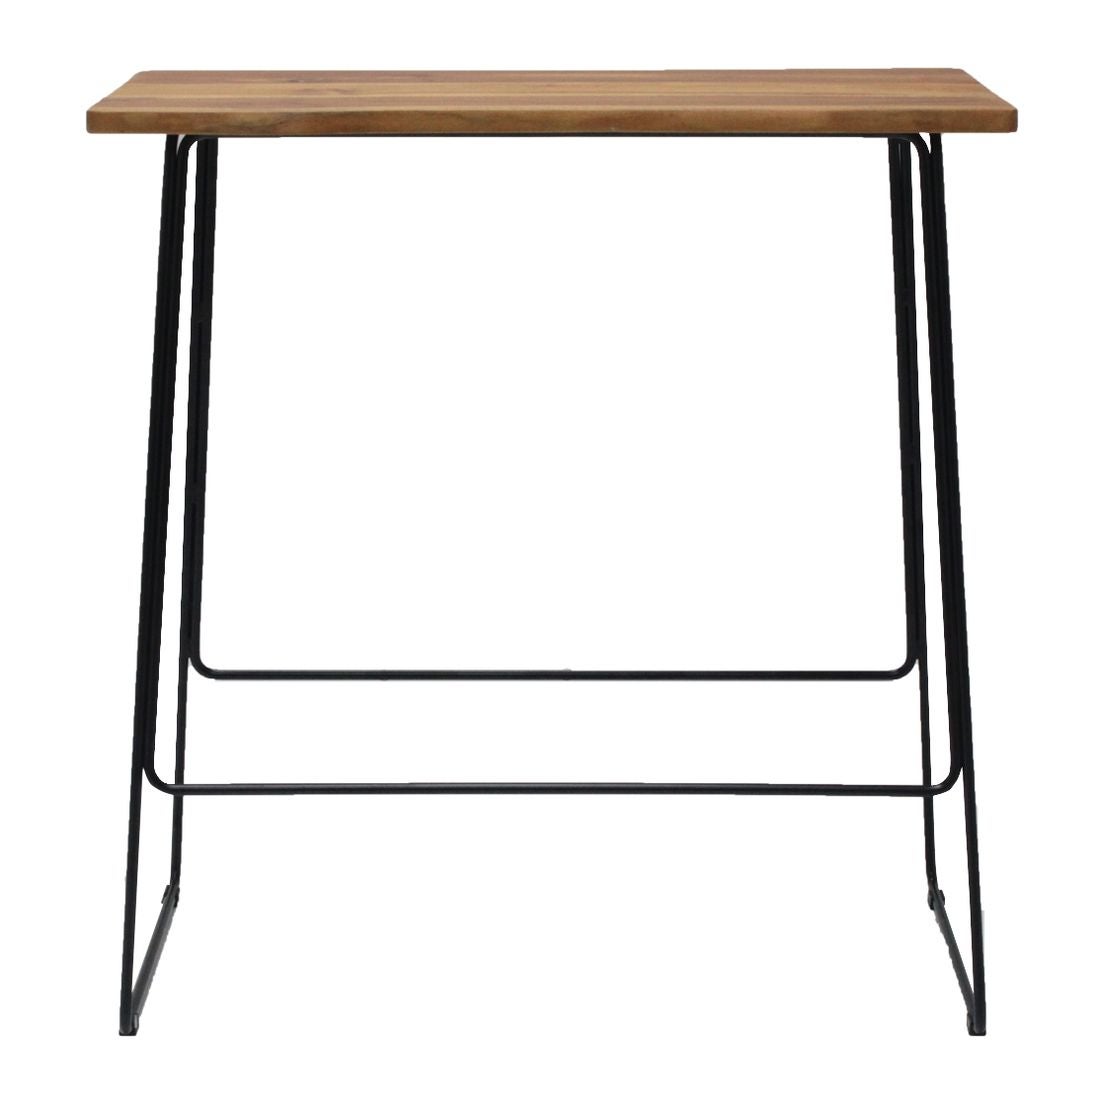 โต๊ะทานอาหาร โต๊ะอาหารขาเหล็กท๊อปไม้ รุ่น Fatin สีสีลายไม้ธรรมชาติ-SB Design Square